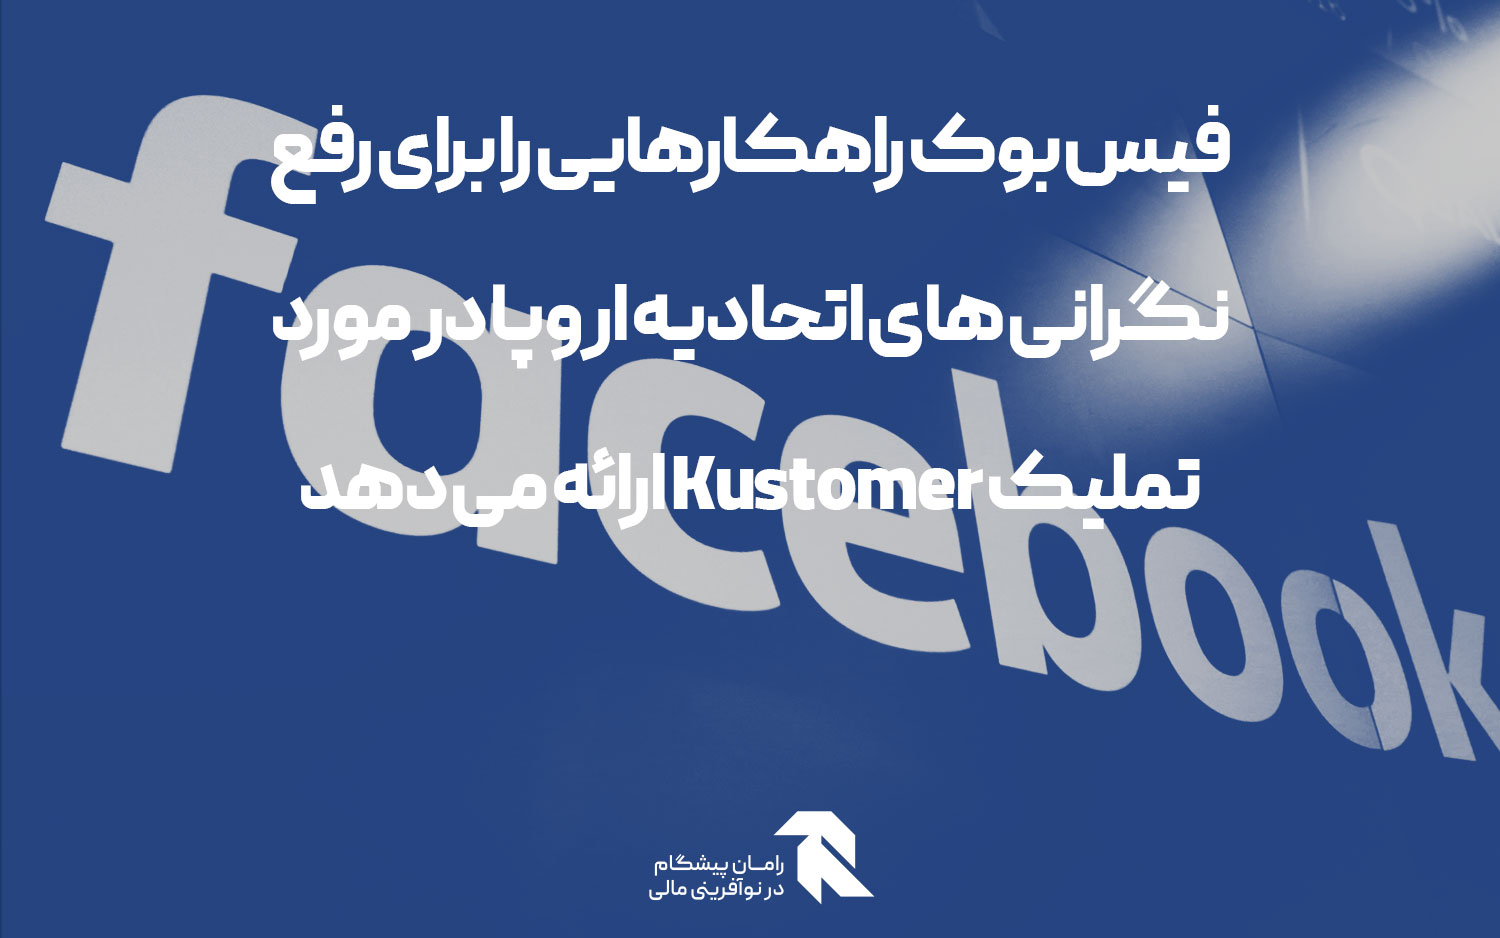 فیس بوک راهکارهایی را برای رفع نگرانی های اتحادیه اروپا در مورد تملیک Kustomer ارائه می دهد